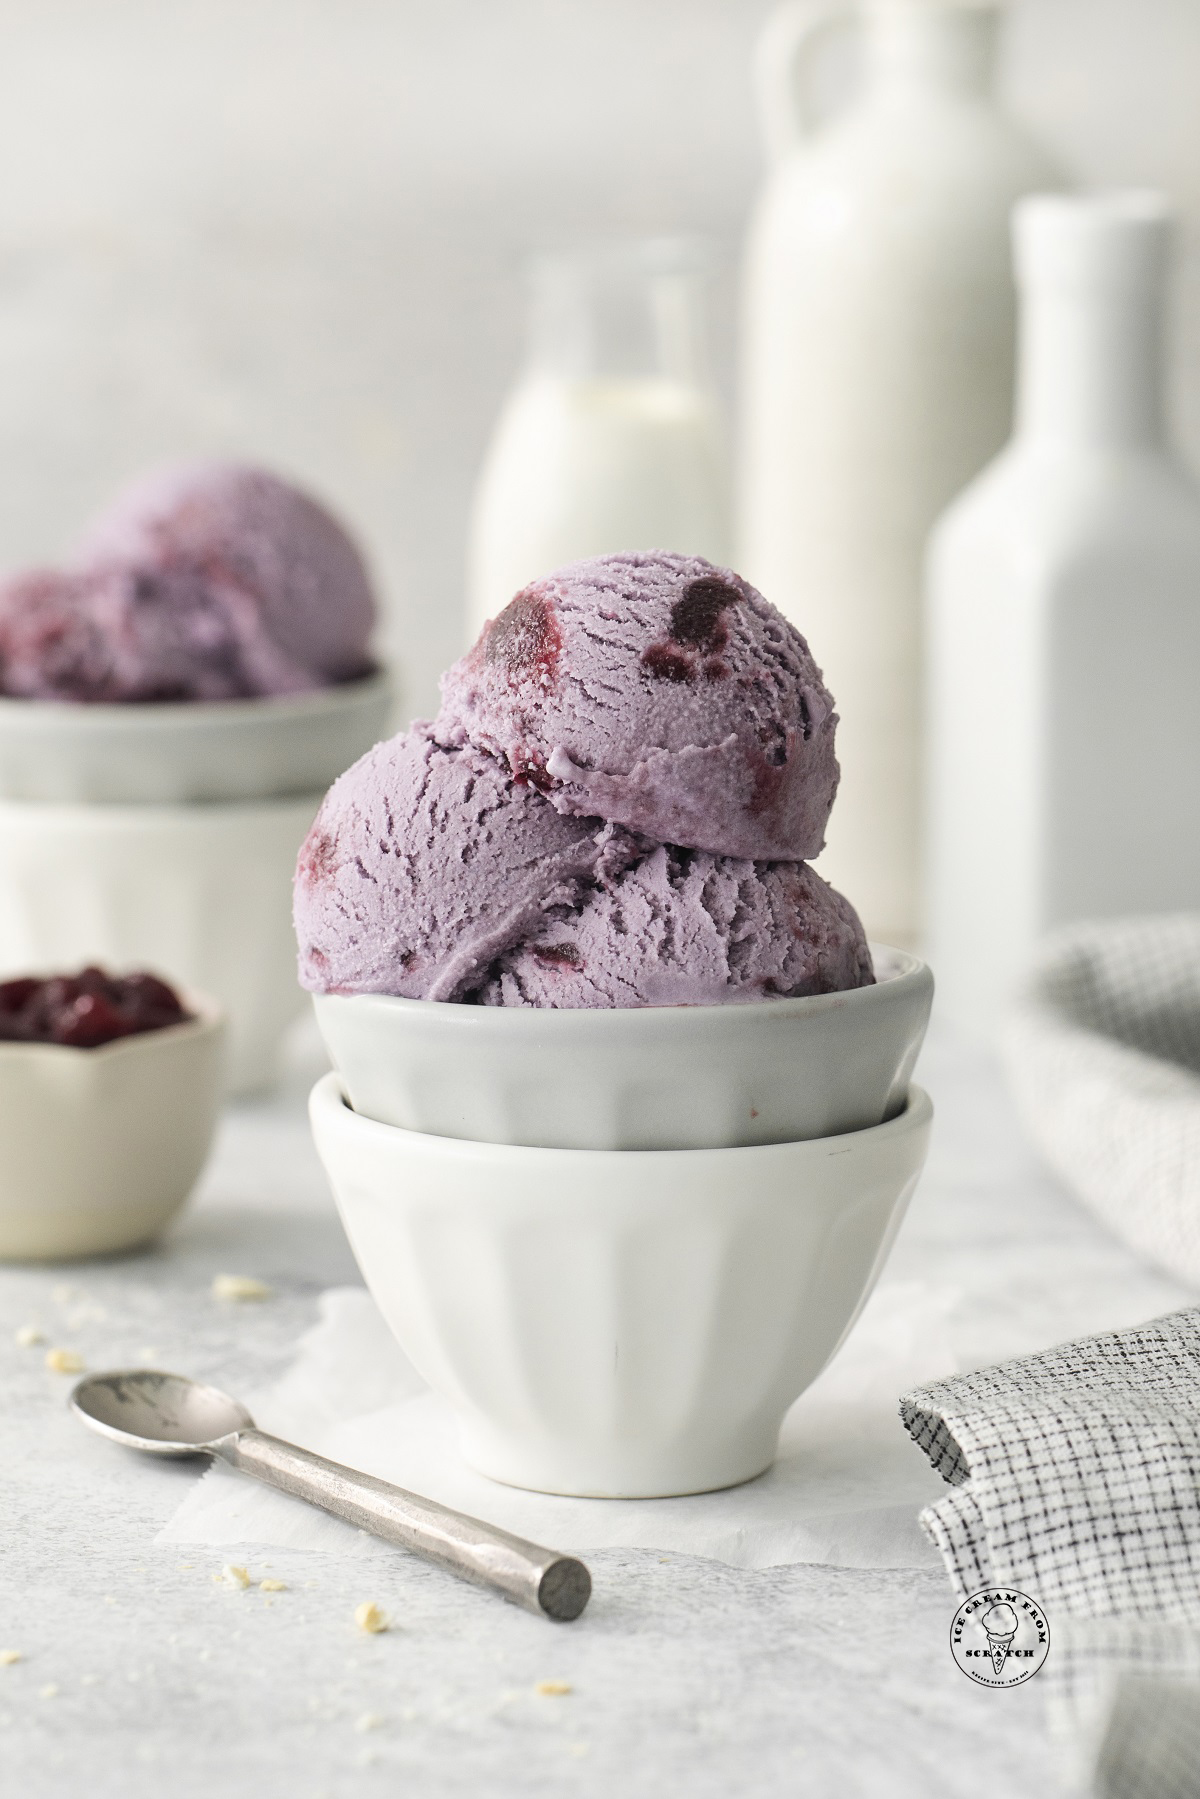 purple grape ice cream scooped into a ceramic bowl.